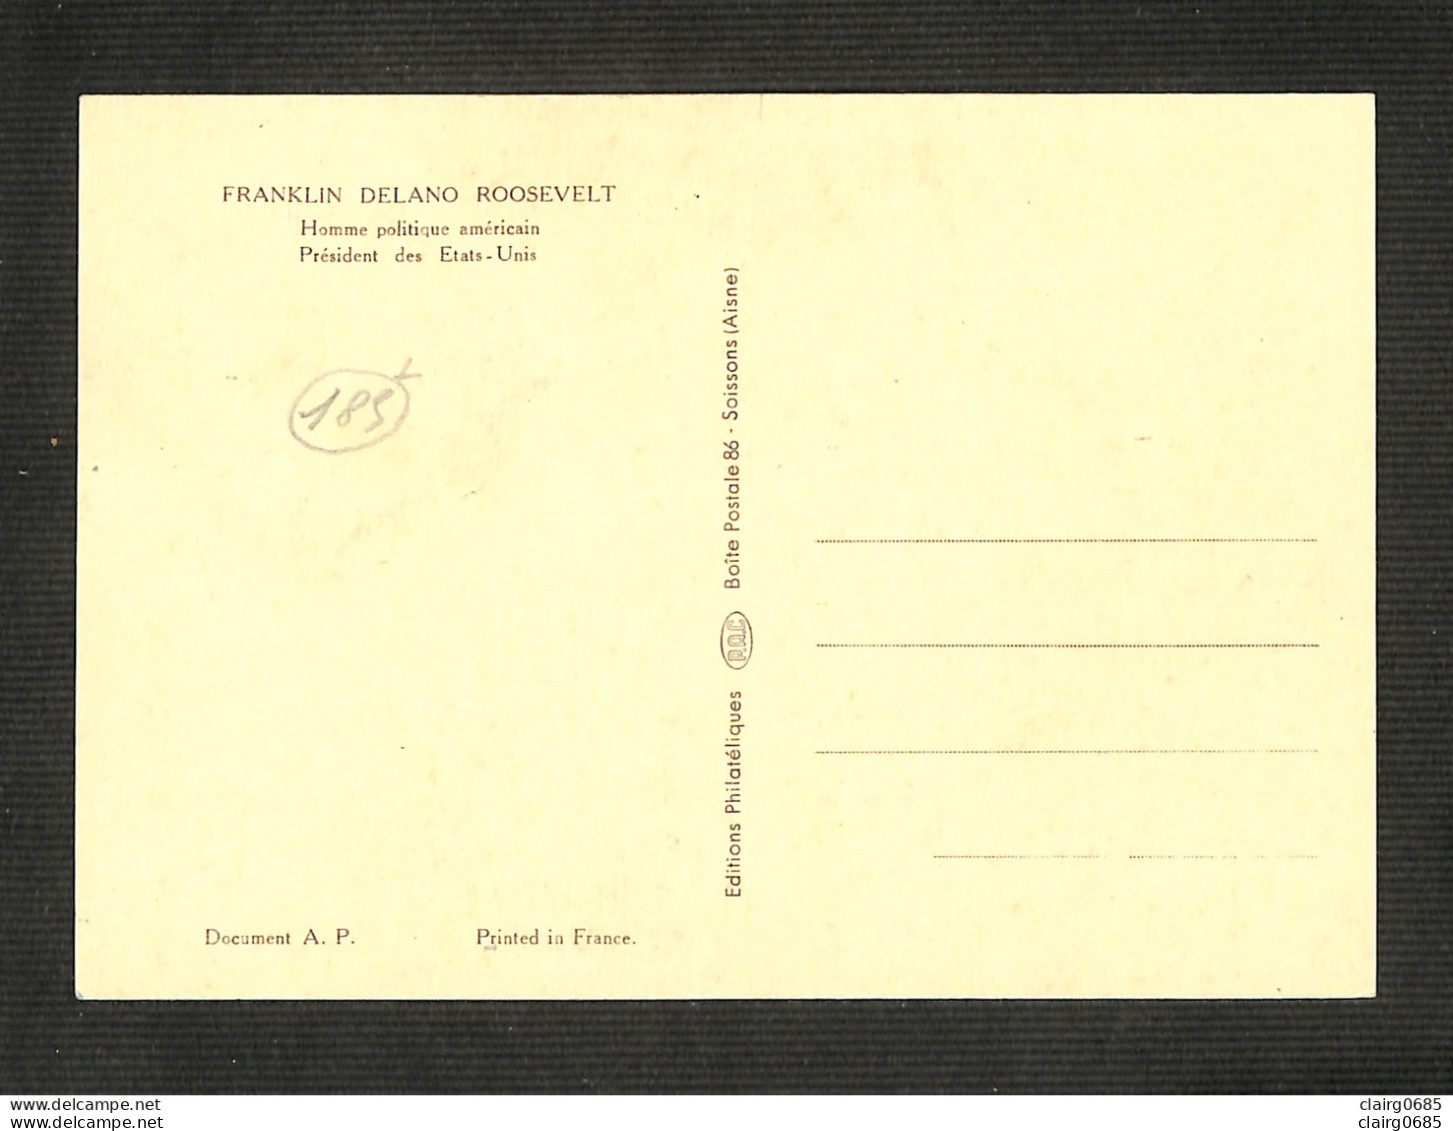 MONACO - Carte MAXIMUM 1956 - Franklin Delano Roosevelt - Cartes-Maximum (CM)